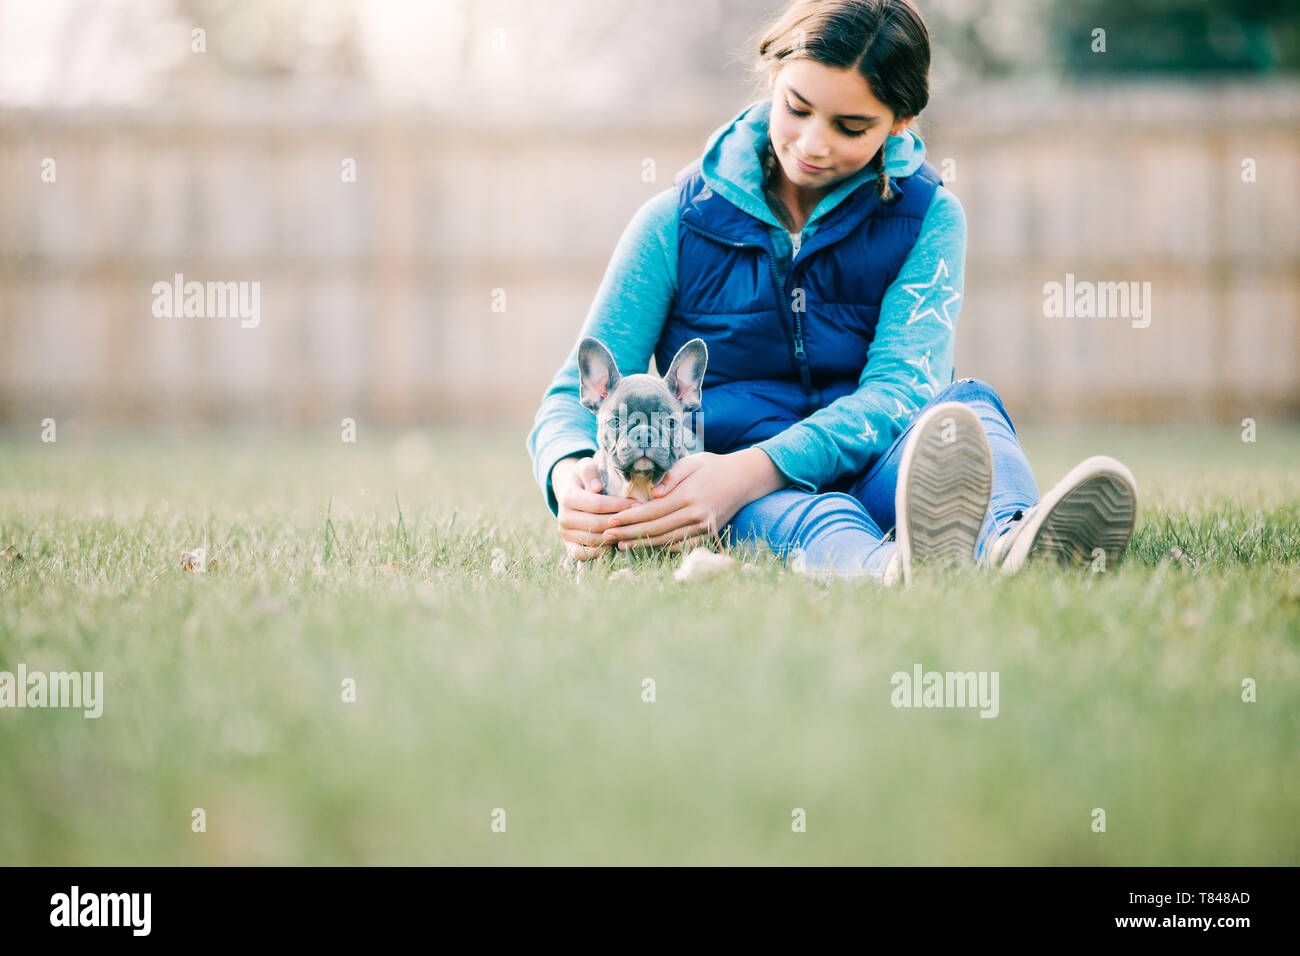 Niña jugando con Puppy sobre hierba Foto de stock